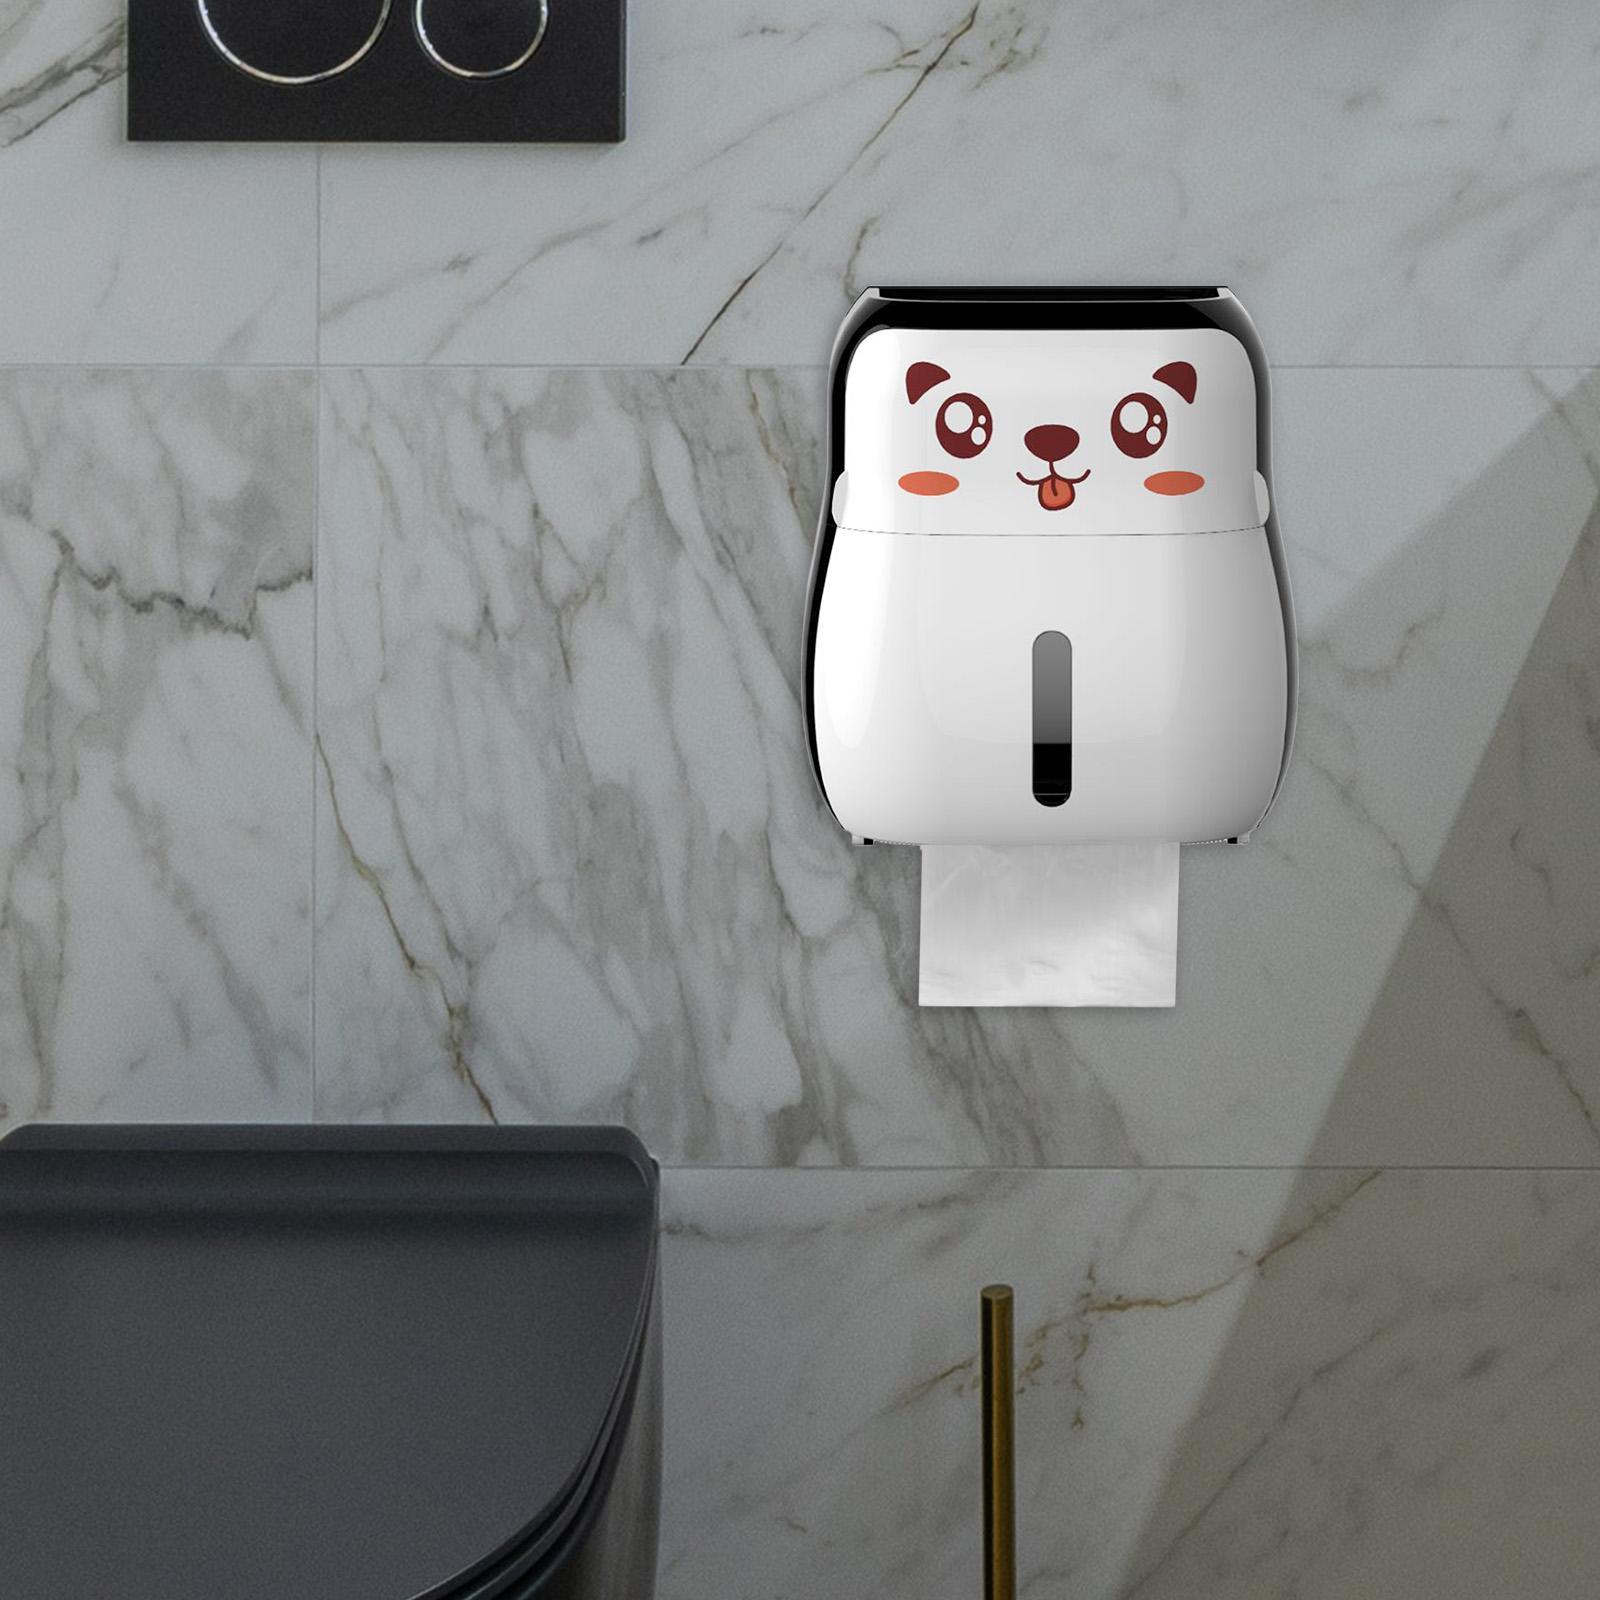 Paper Roll Dispenser Adhesives Tissue Box Holder for Toilet Bathroom Bedroom